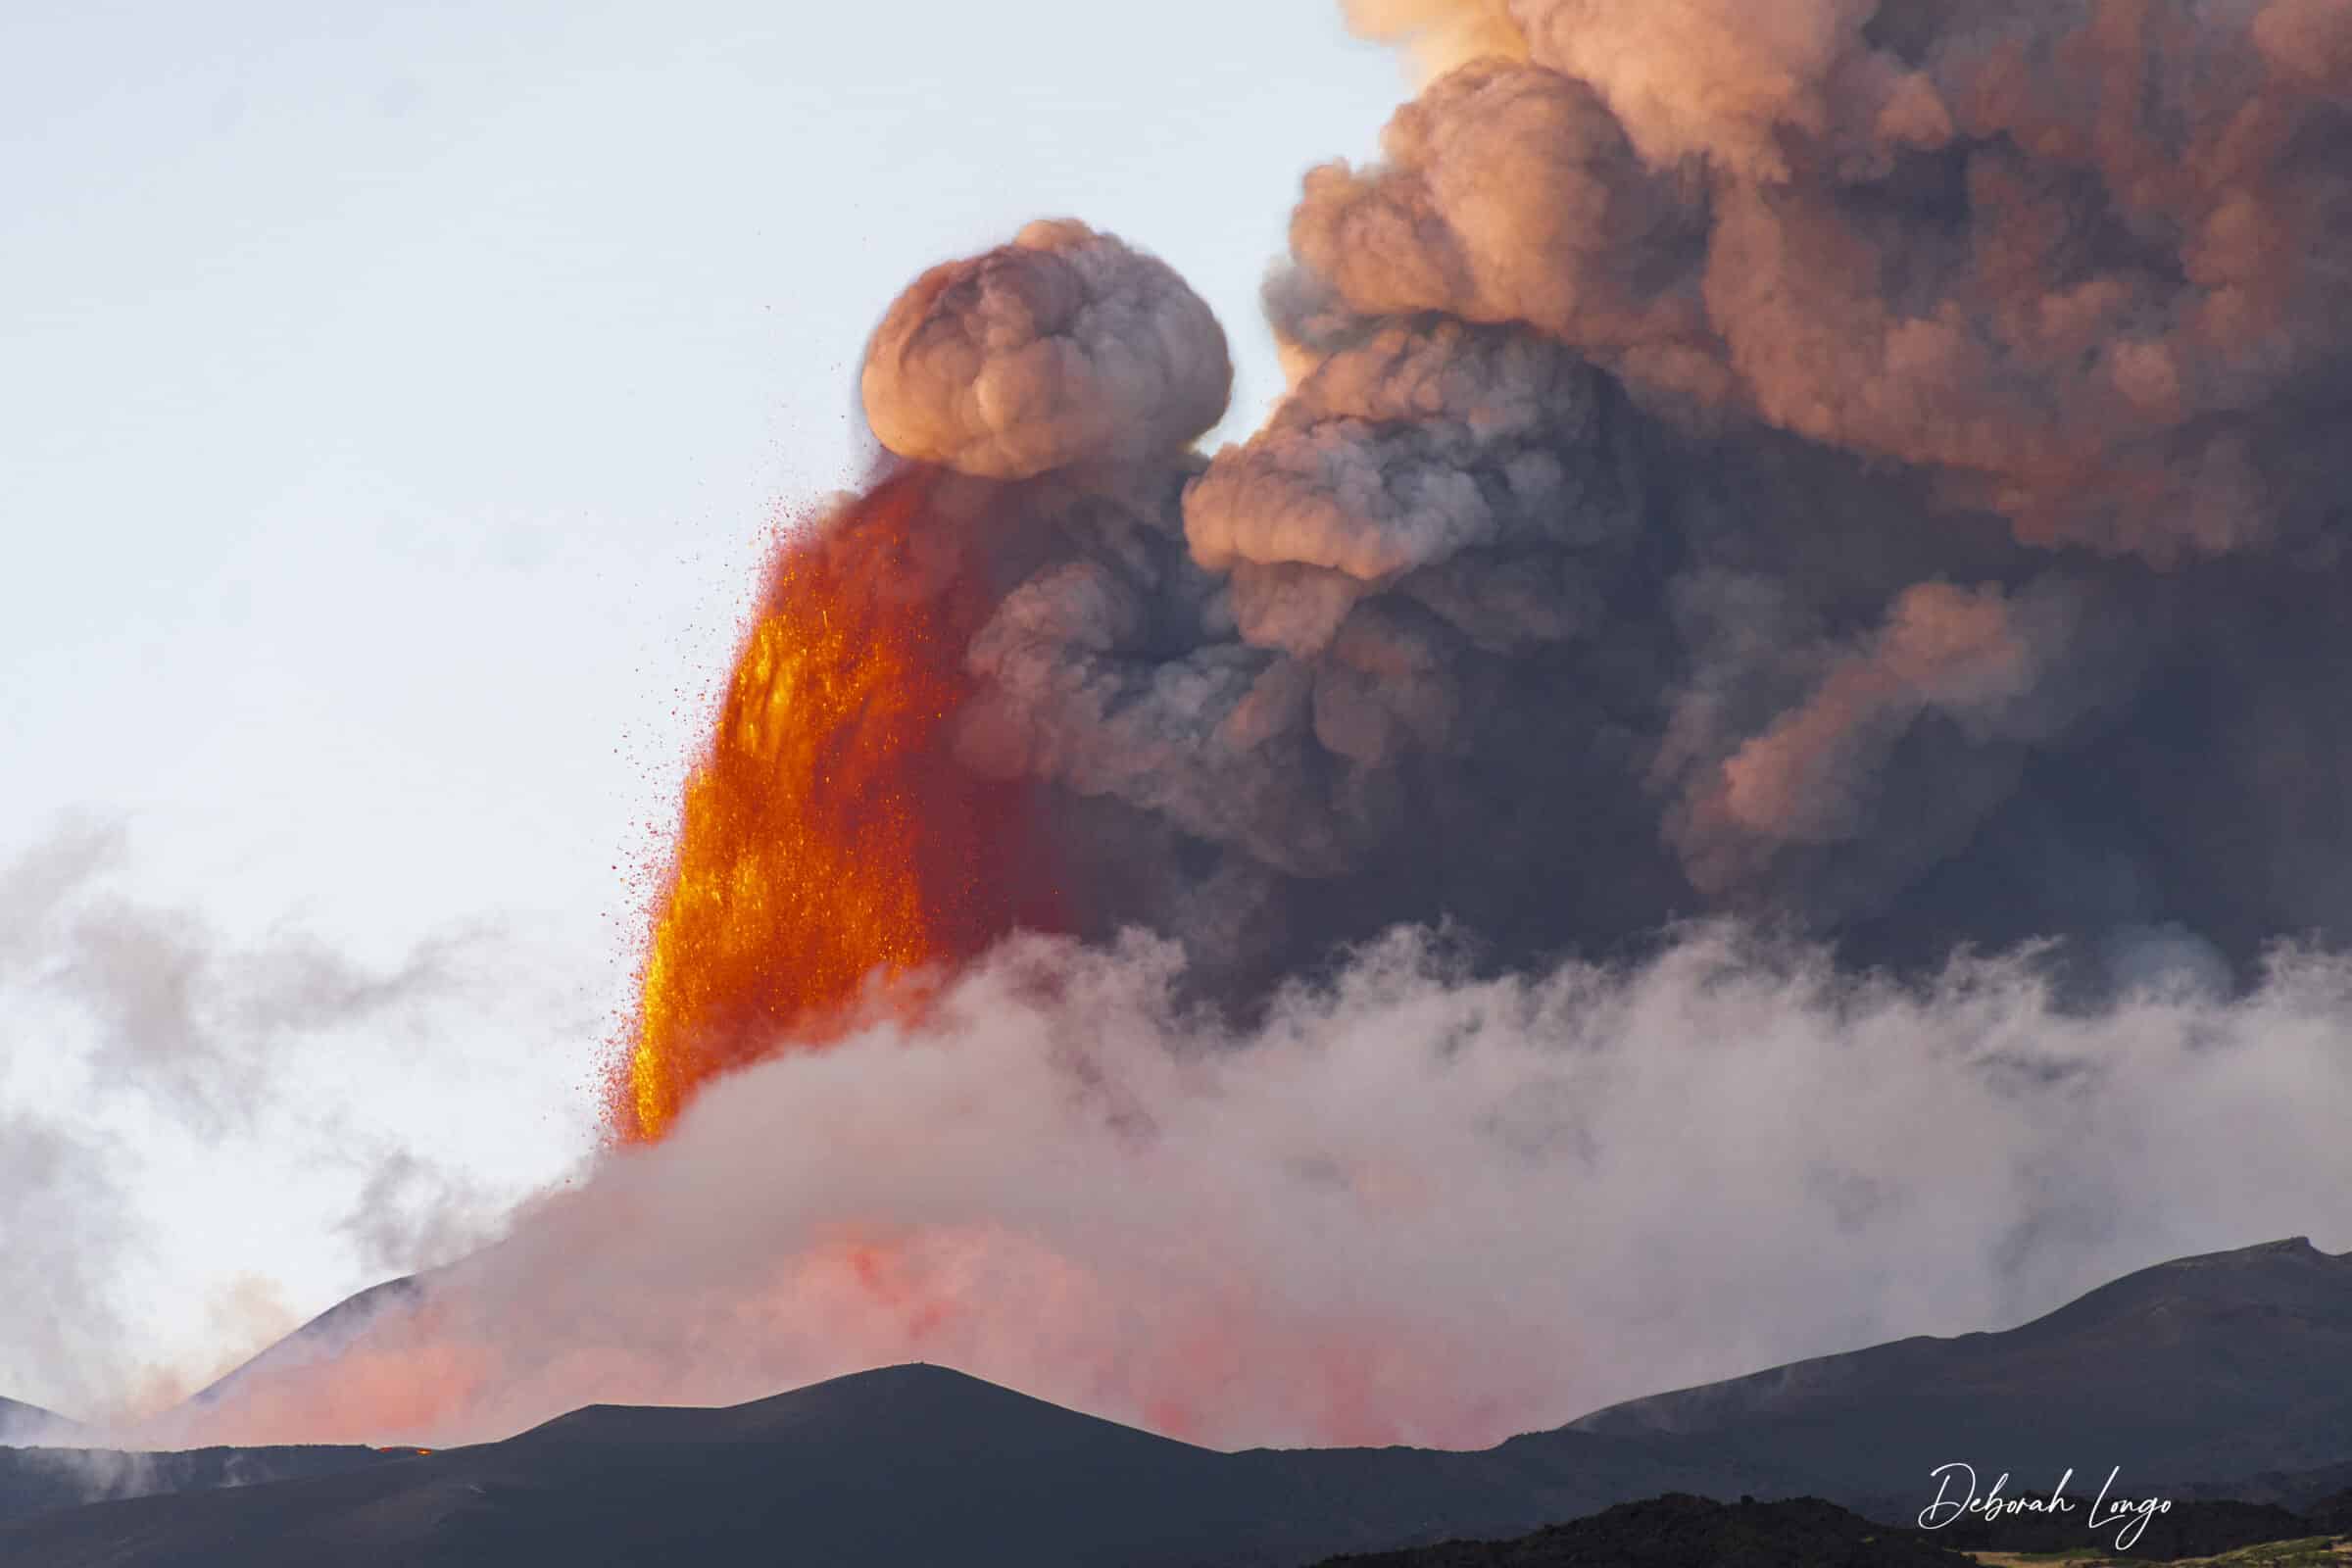 Etna, cenere e lapilli “salvano” i catanesi da eruzioni devastanti: il Vulcano “parla” ma non viene “ascoltato”